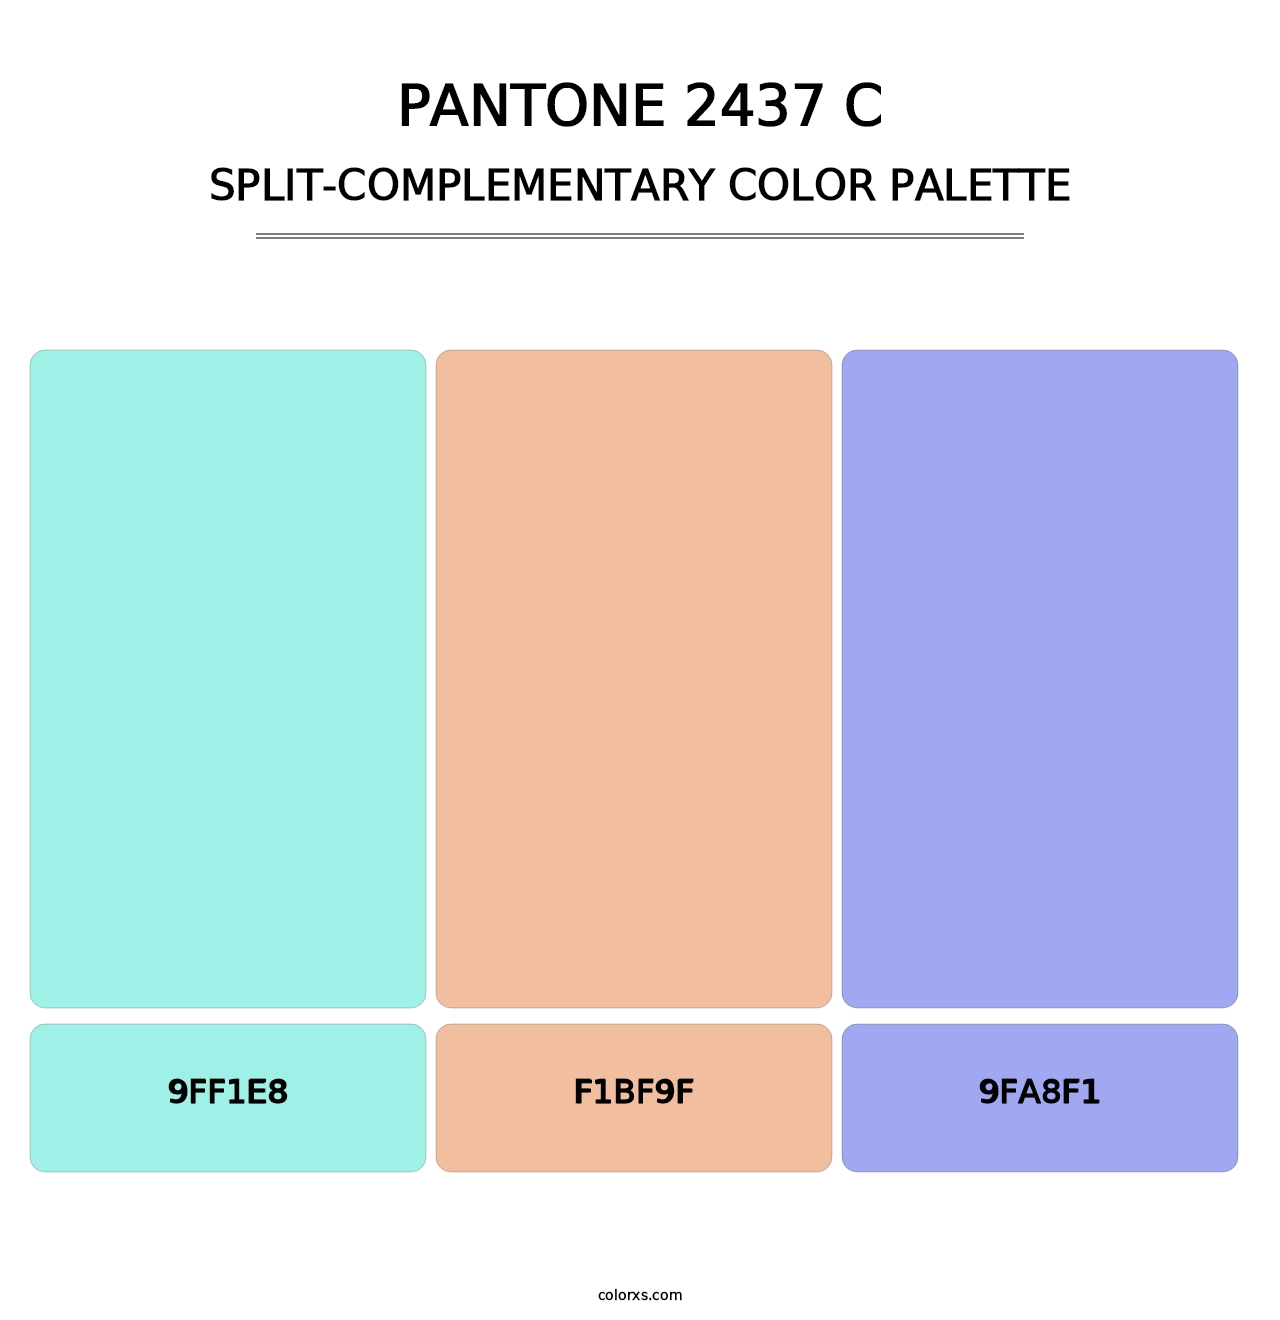 PANTONE 2437 C - Split-Complementary Color Palette